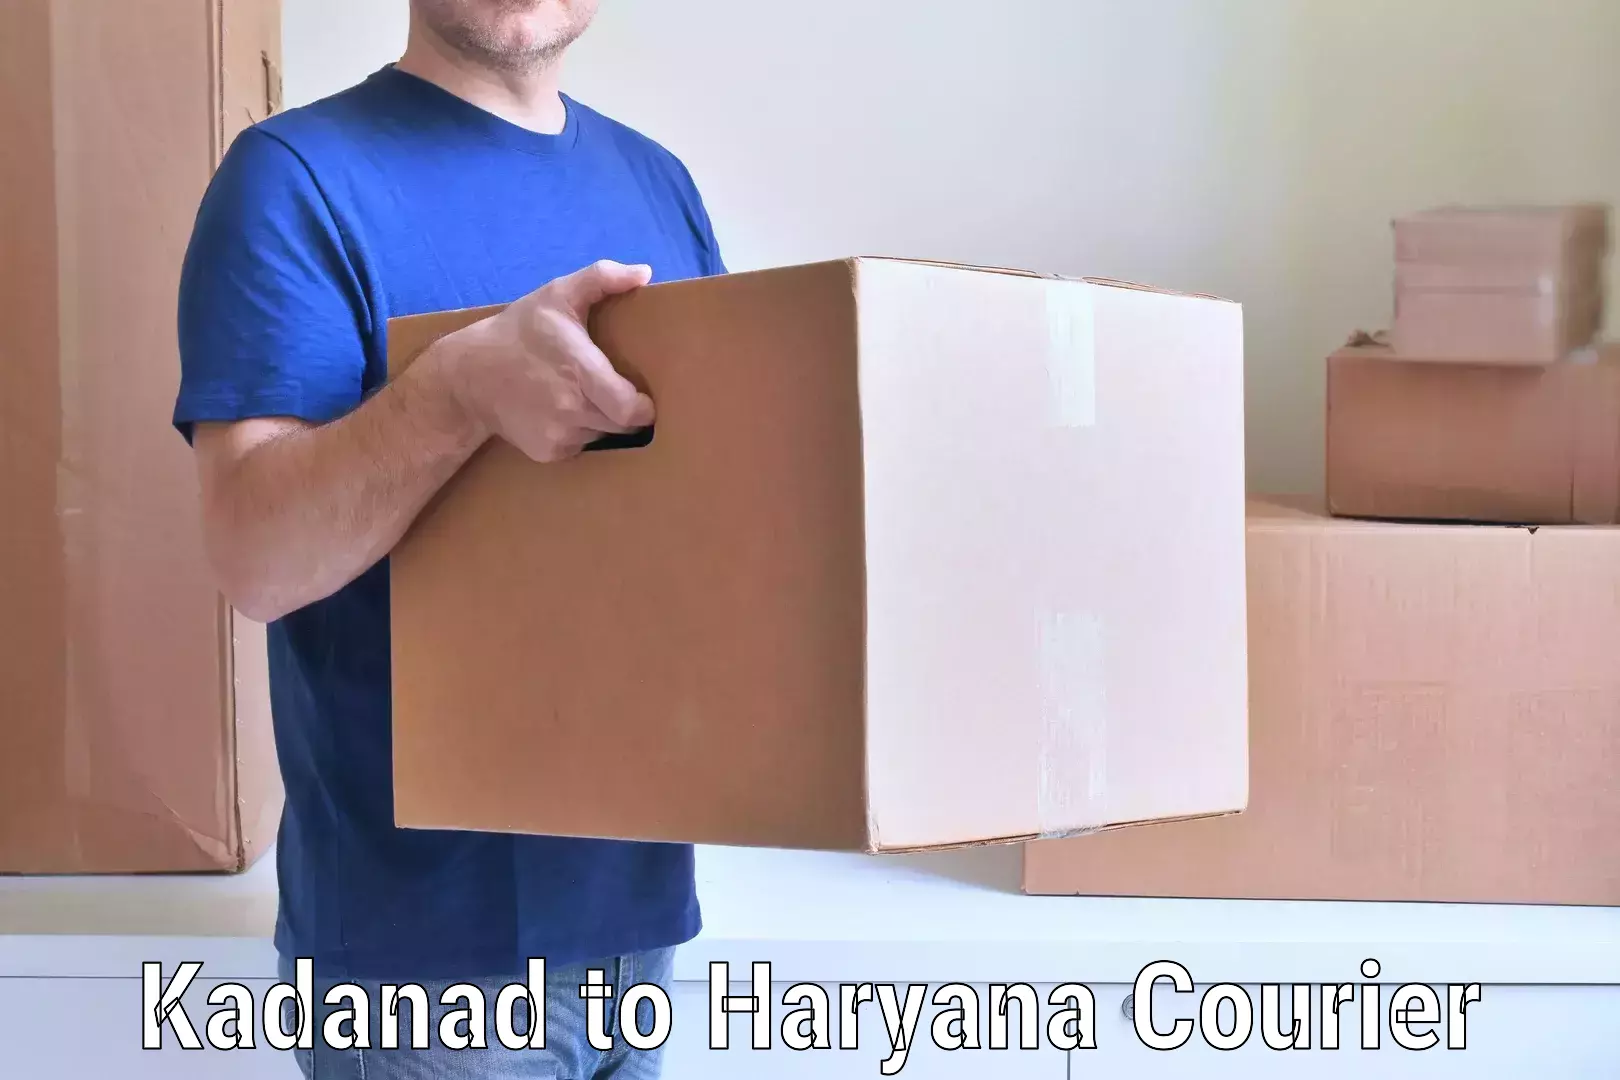 Professional moving company Kadanad to Haryana